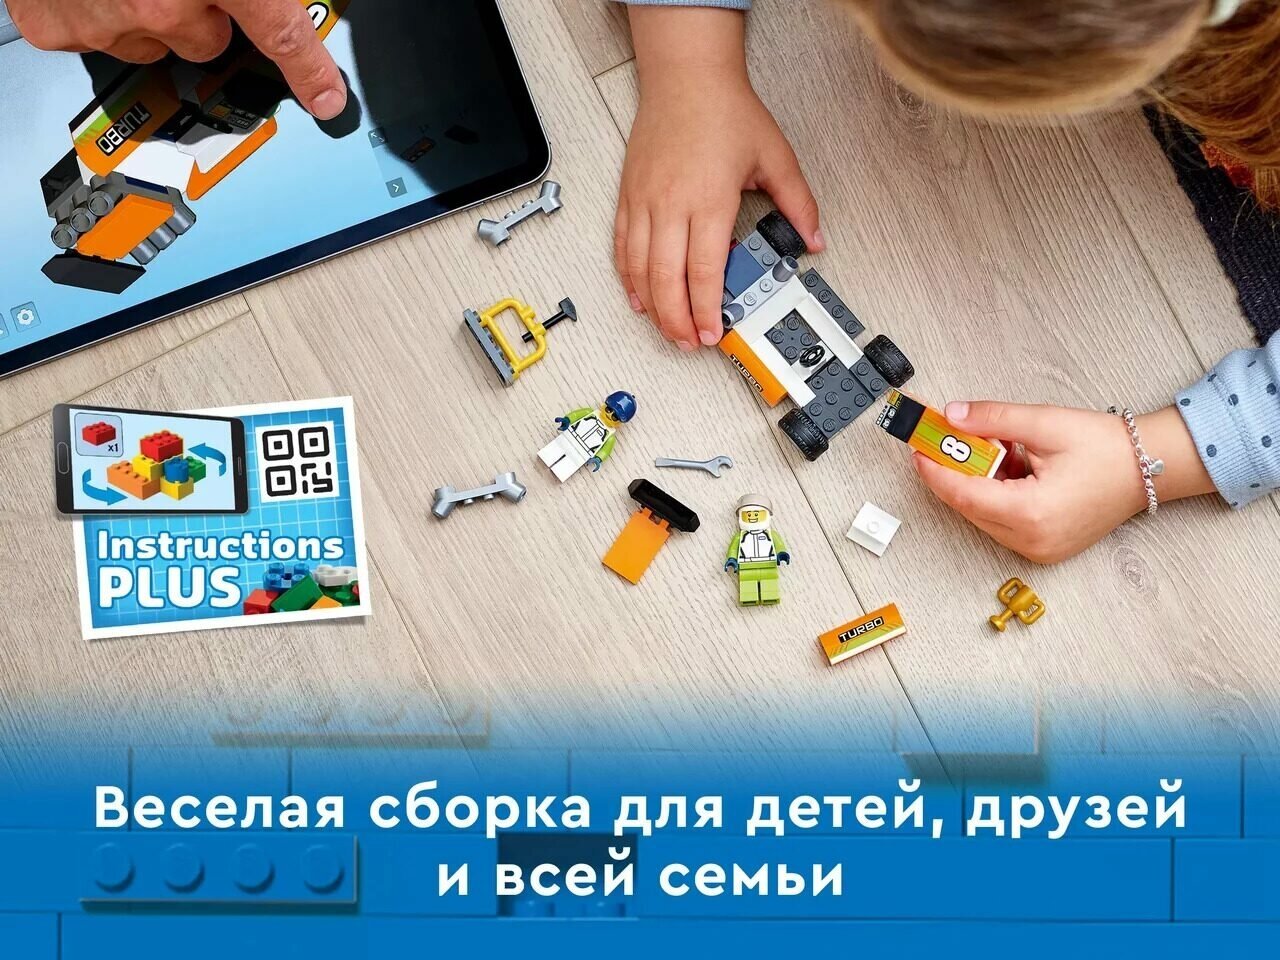 Конструкторы LEGO - фото №13